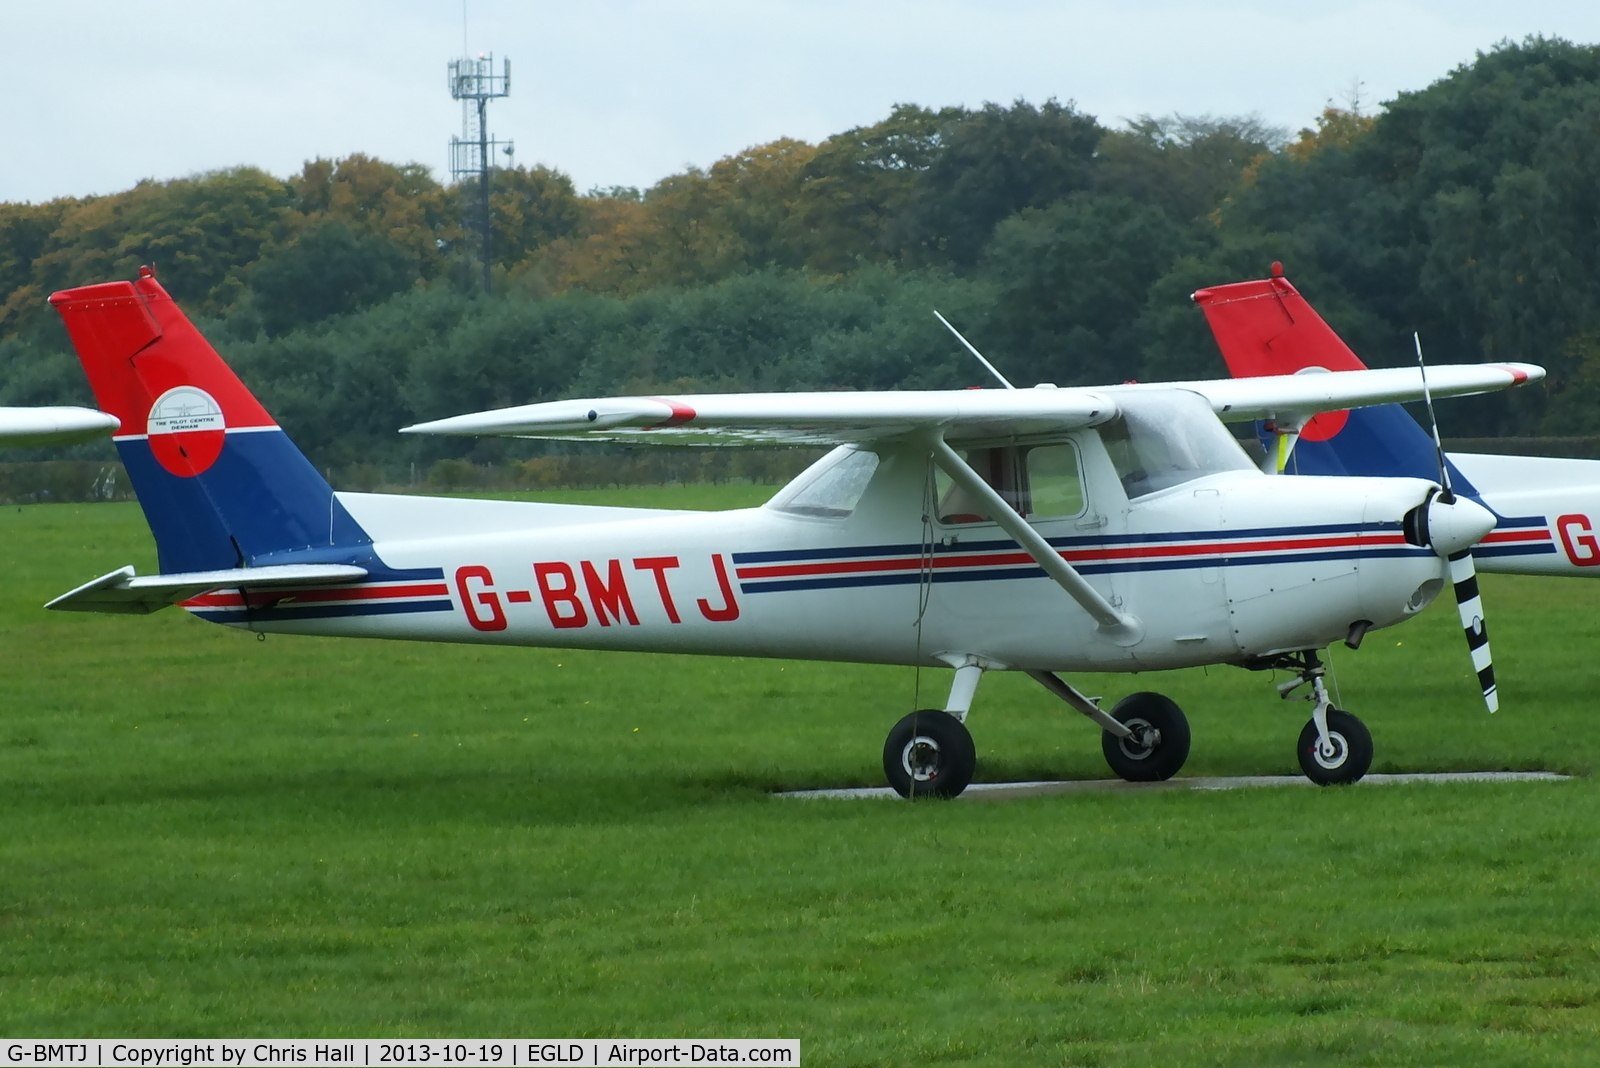 G-BMTJ, 1981 Cessna 152 C/N 152-85010, The Pilot Centre Ltd